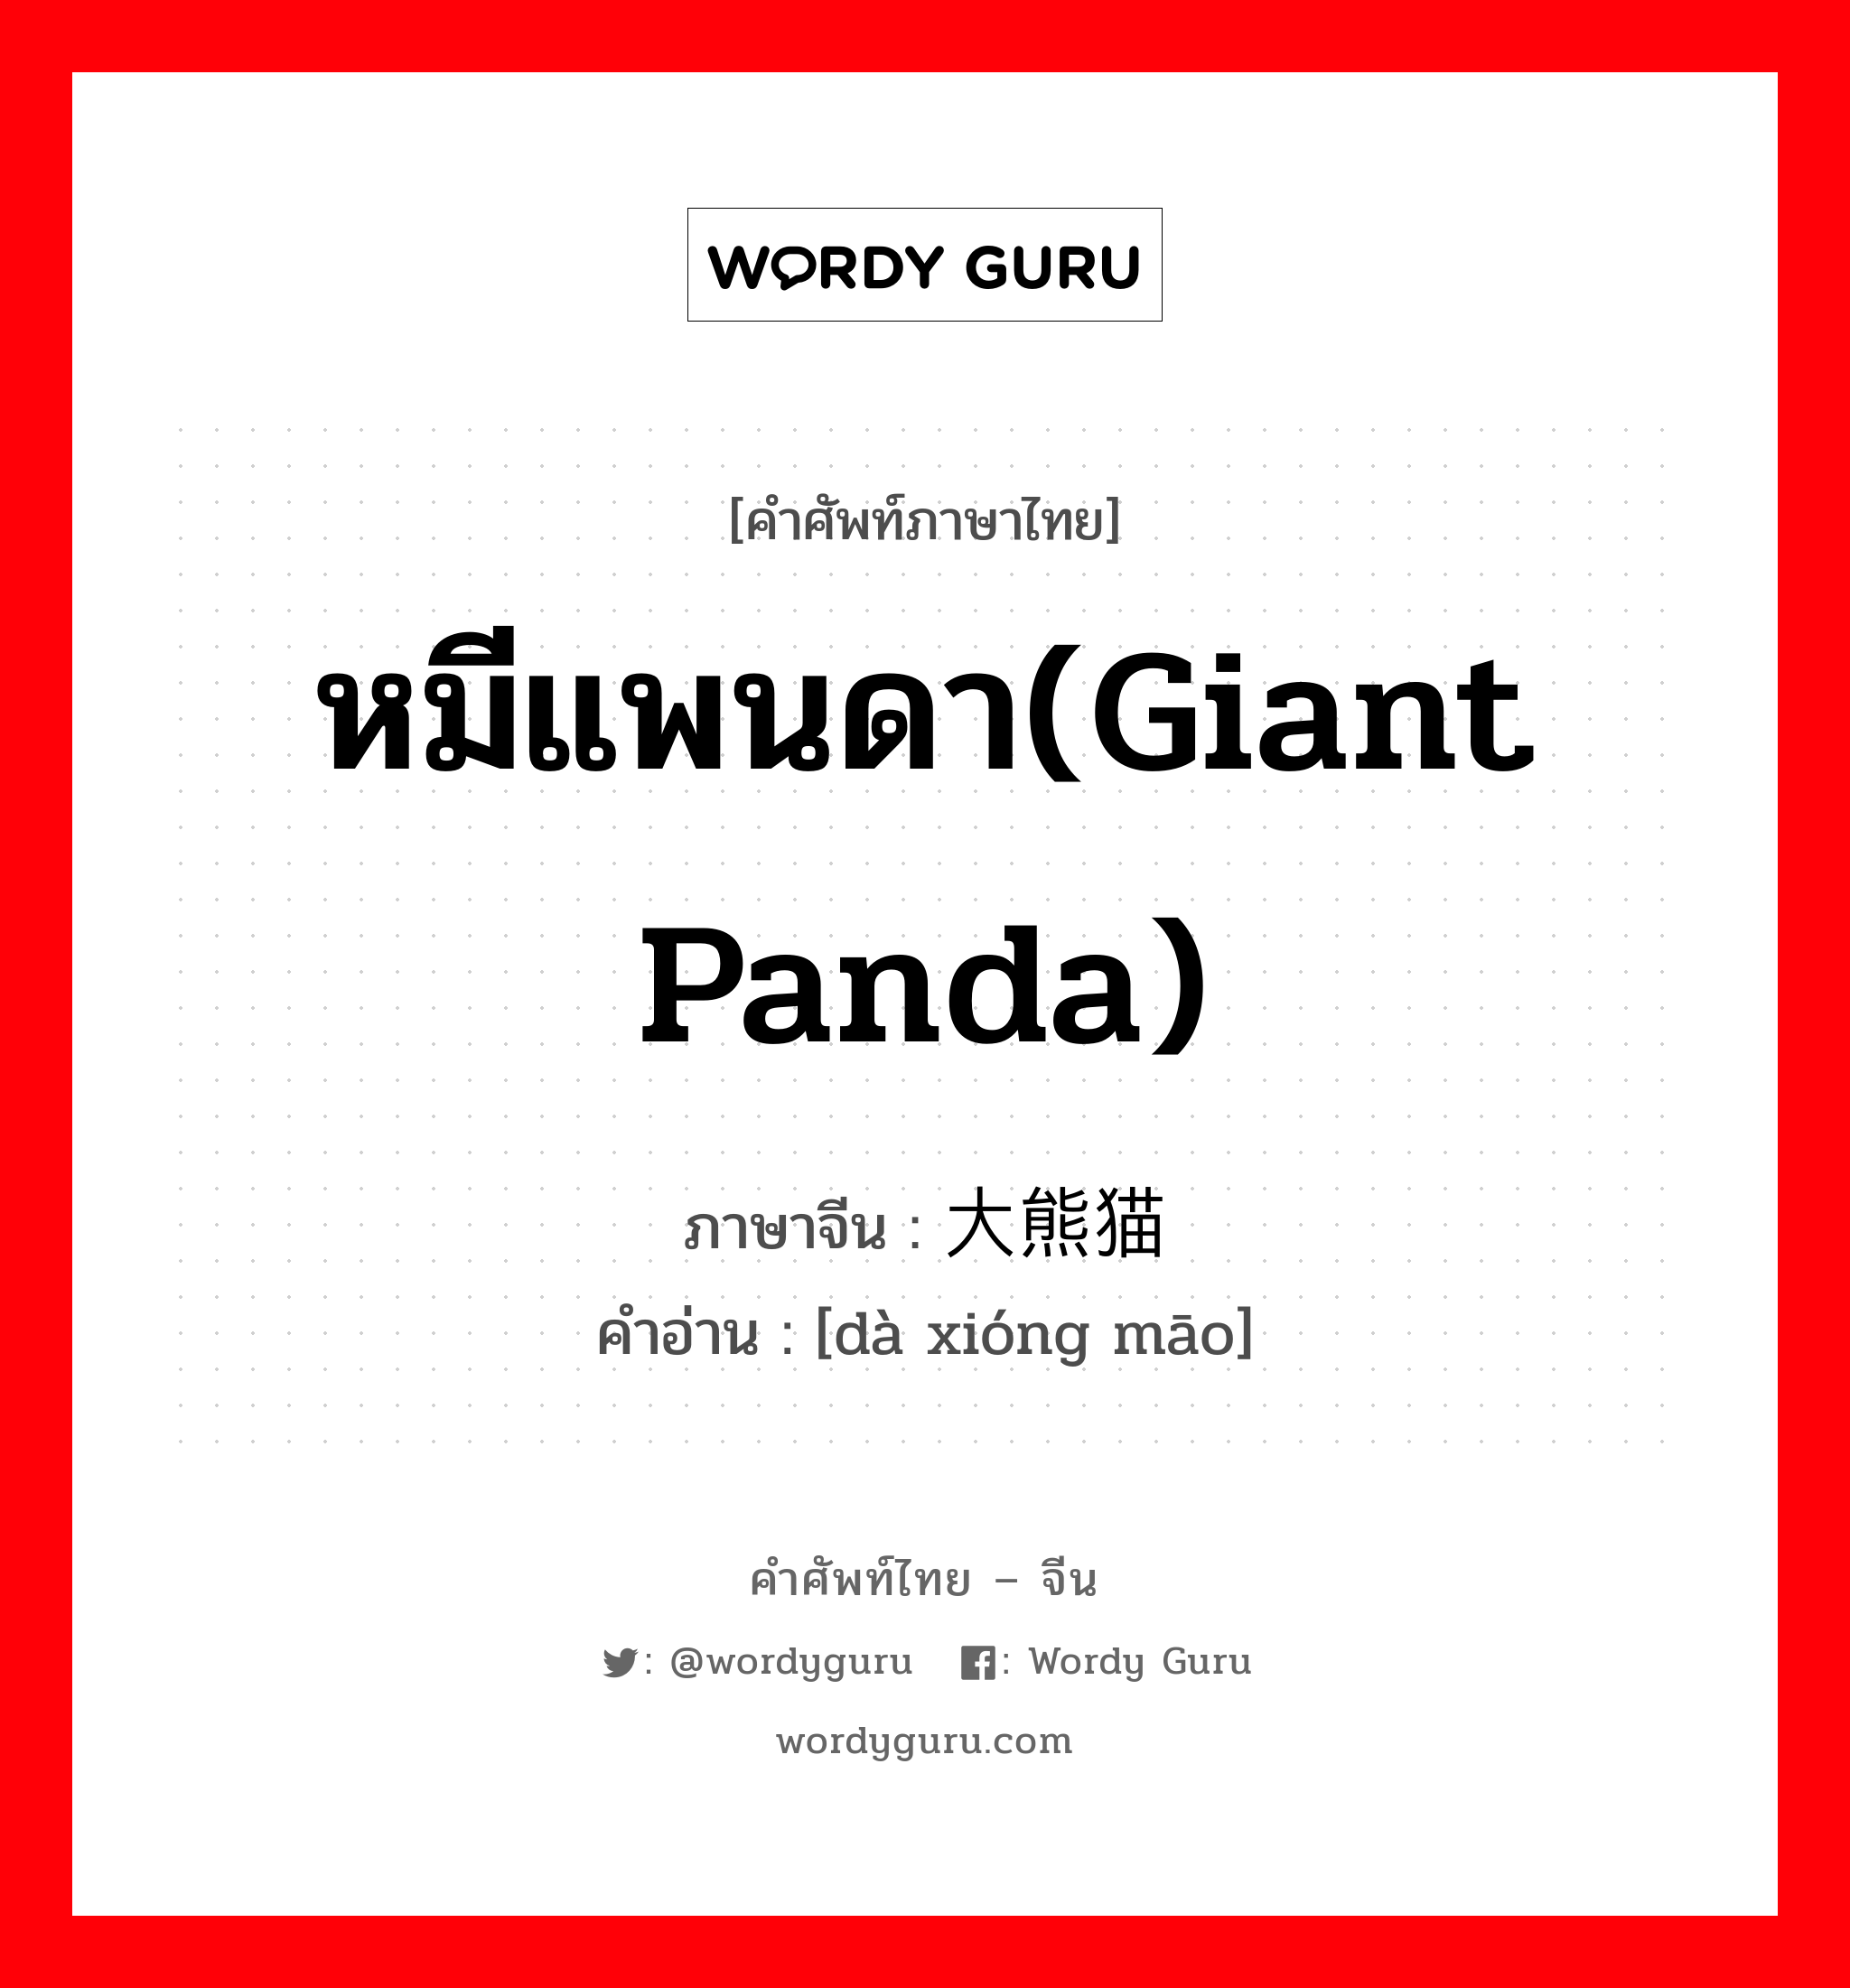 หมีแพนดา(giant panda) ภาษาจีนคืออะไร, คำศัพท์ภาษาไทย - จีน หมีแพนดา(giant panda) ภาษาจีน 大熊猫 คำอ่าน [dà xióng māo]